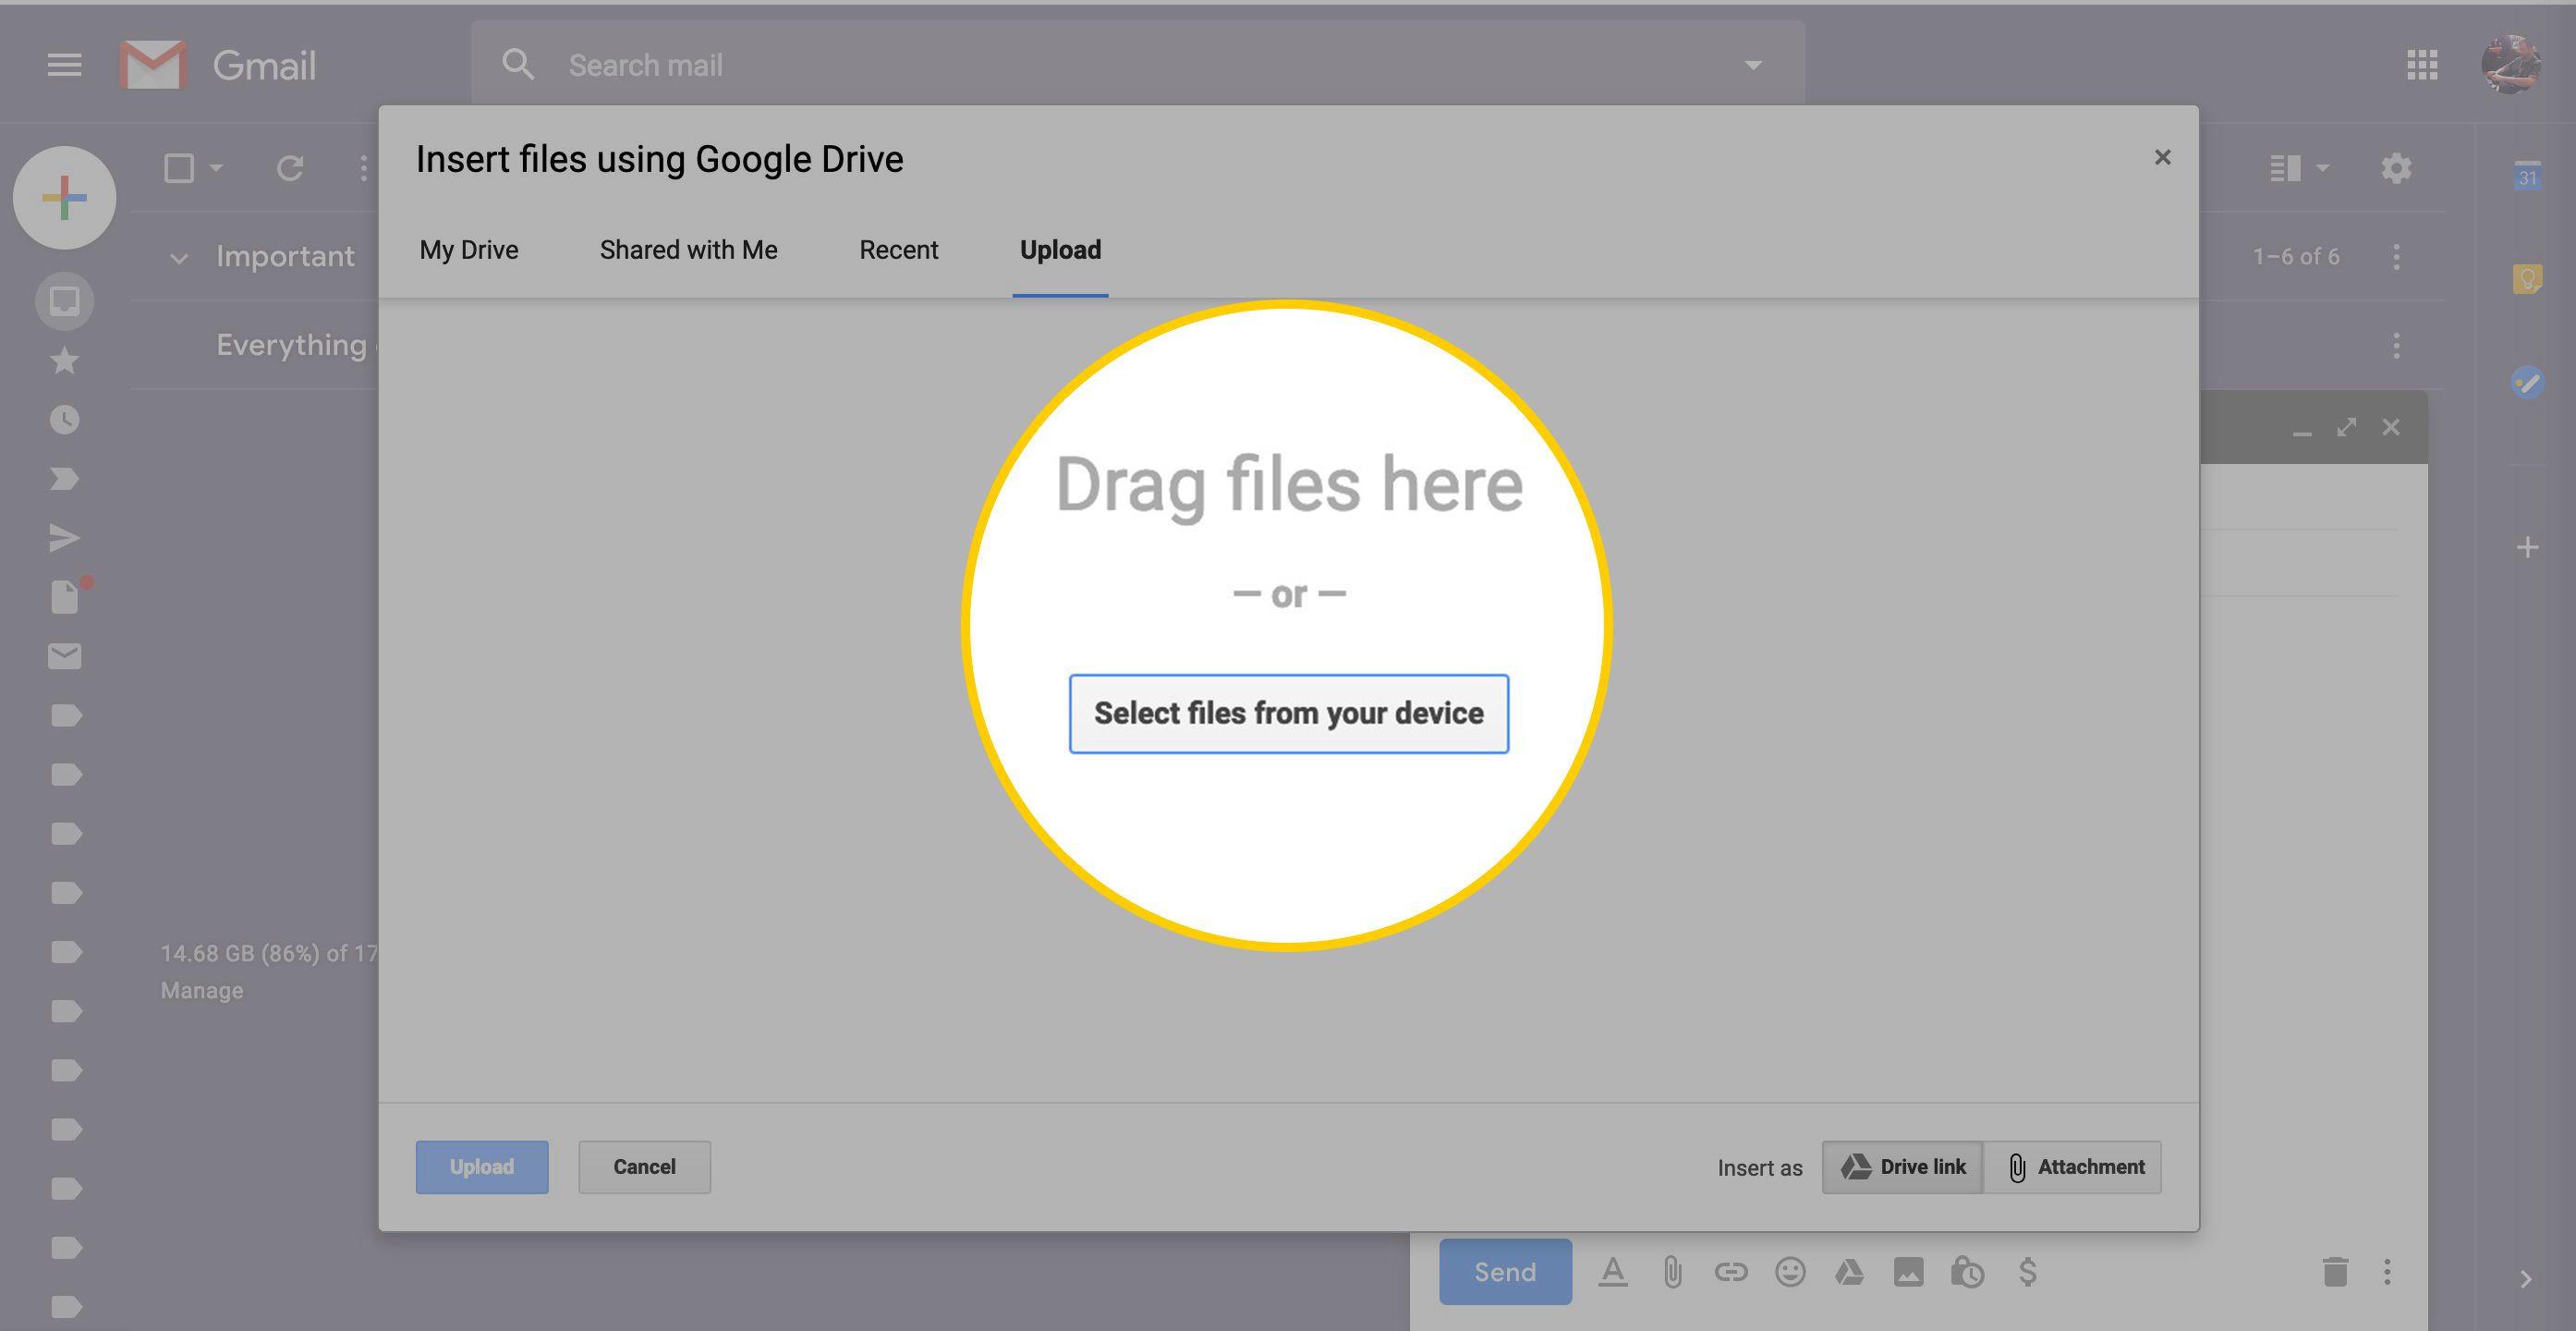 Sleep bestanden hierheen of selecteer bestanden uit het dialoogvenster van uw apparaat in Google Drive via Gmail